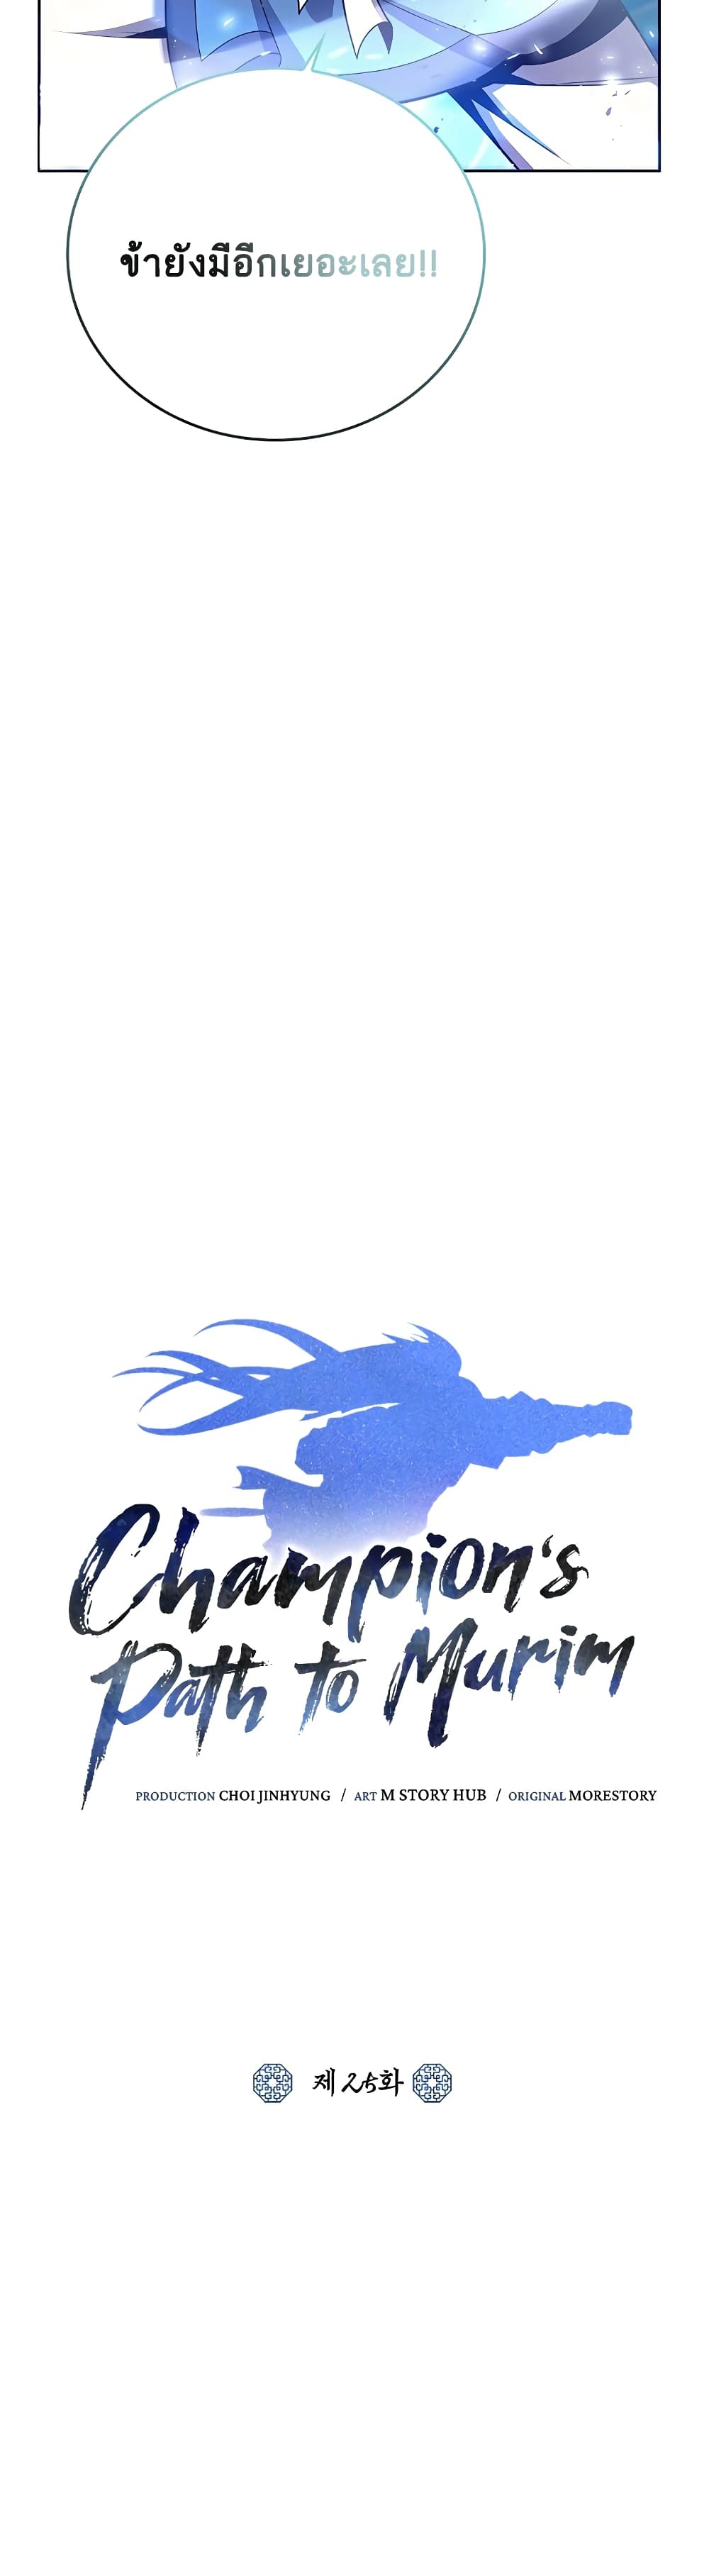 Champion's Path to Murim 25-25